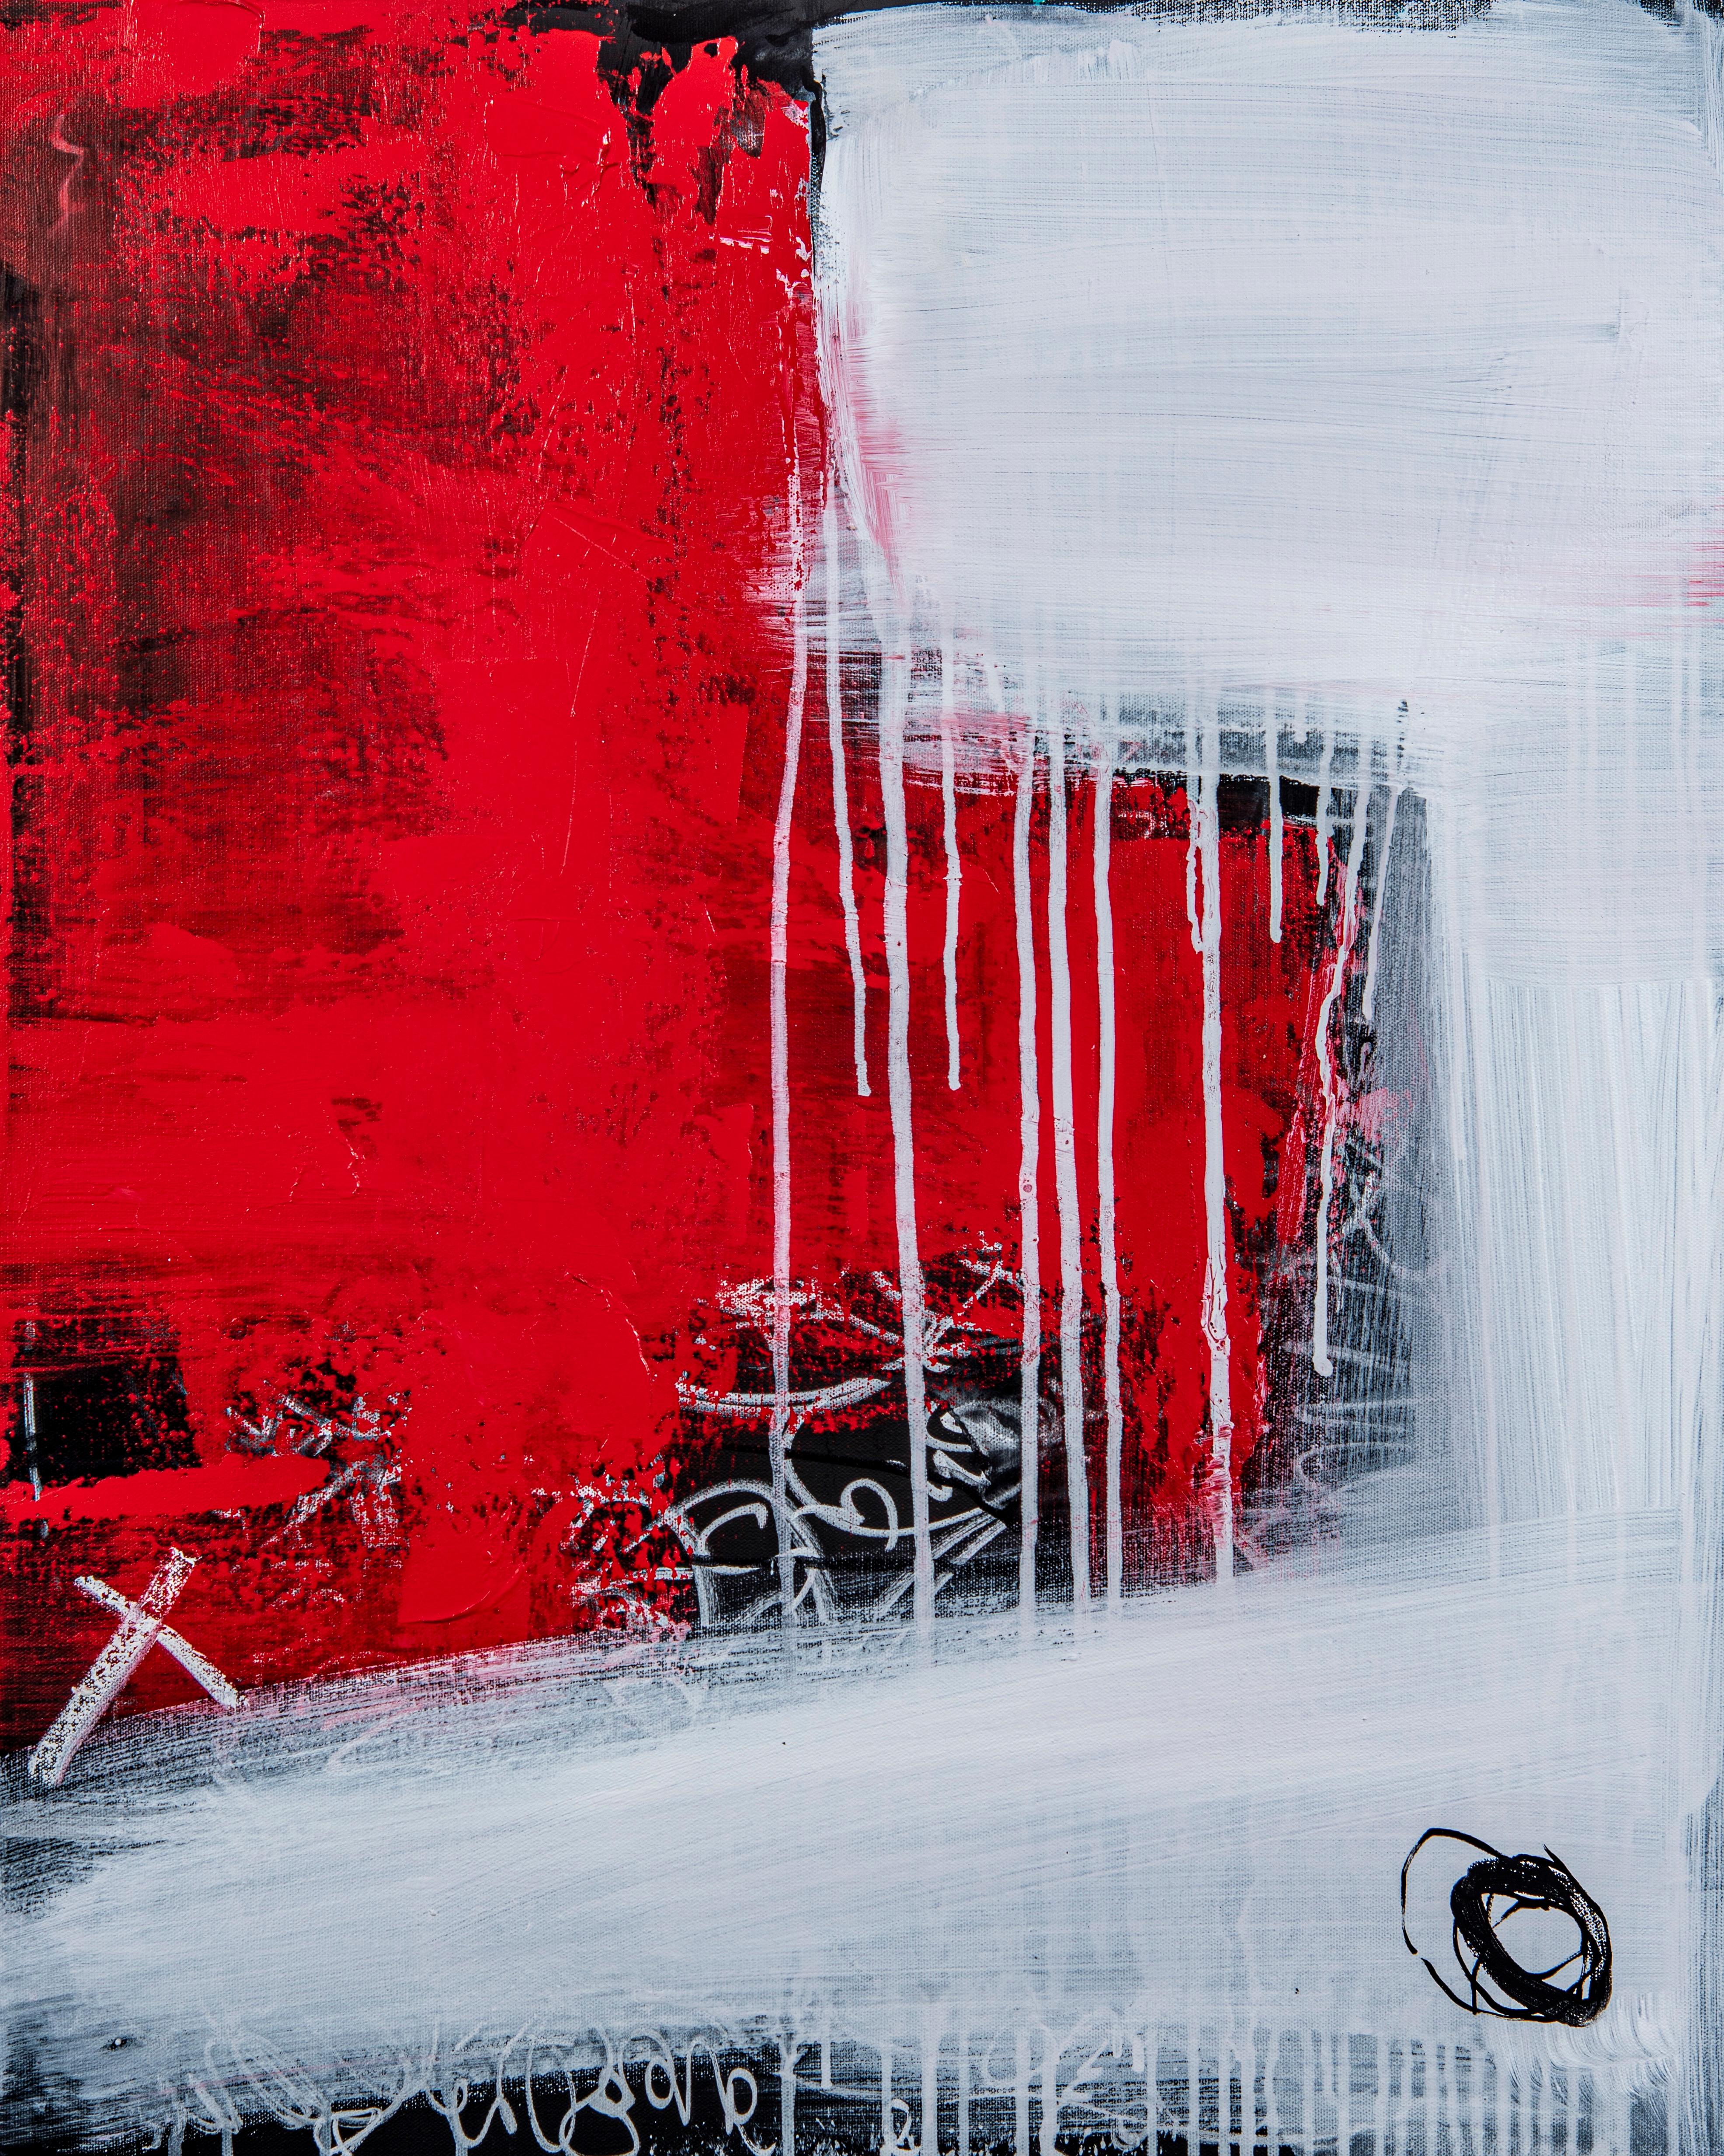  XO ist eine abstrakte  Mischtechnik von Paddy Cohn, fertiggestellt im Herbst 2021. Es ist in der Galerie verpackt, so dass kein Rahmen erforderlich ist. Beachten Sie, wie die Farben Rot und Weiß miteinander verschmelzen, anstatt sich gegenseitig zu